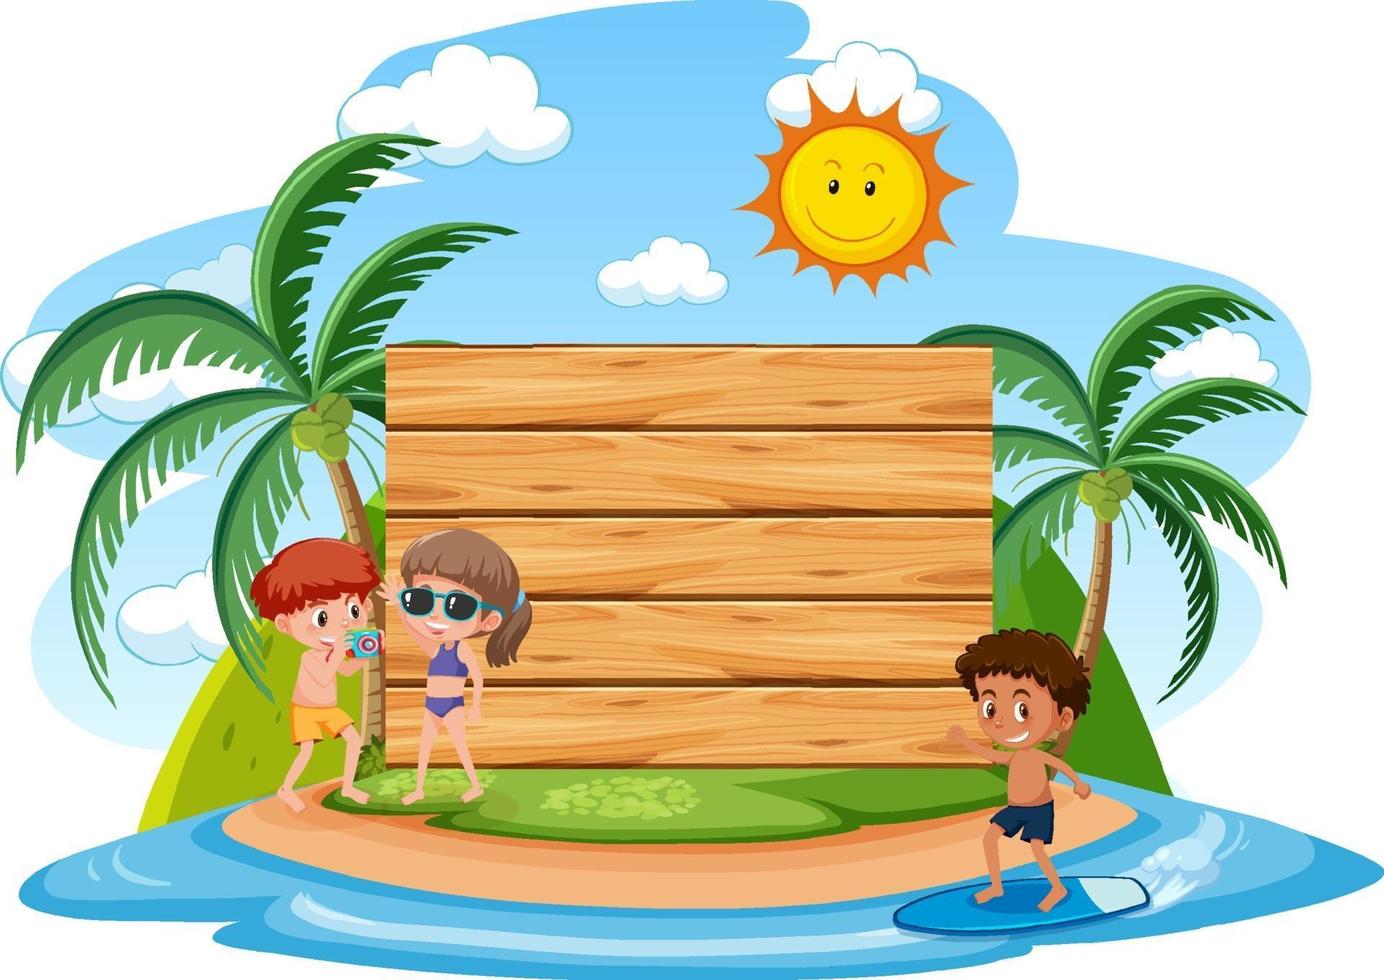 modelo de banner vazio com crianças de férias na praia vetor